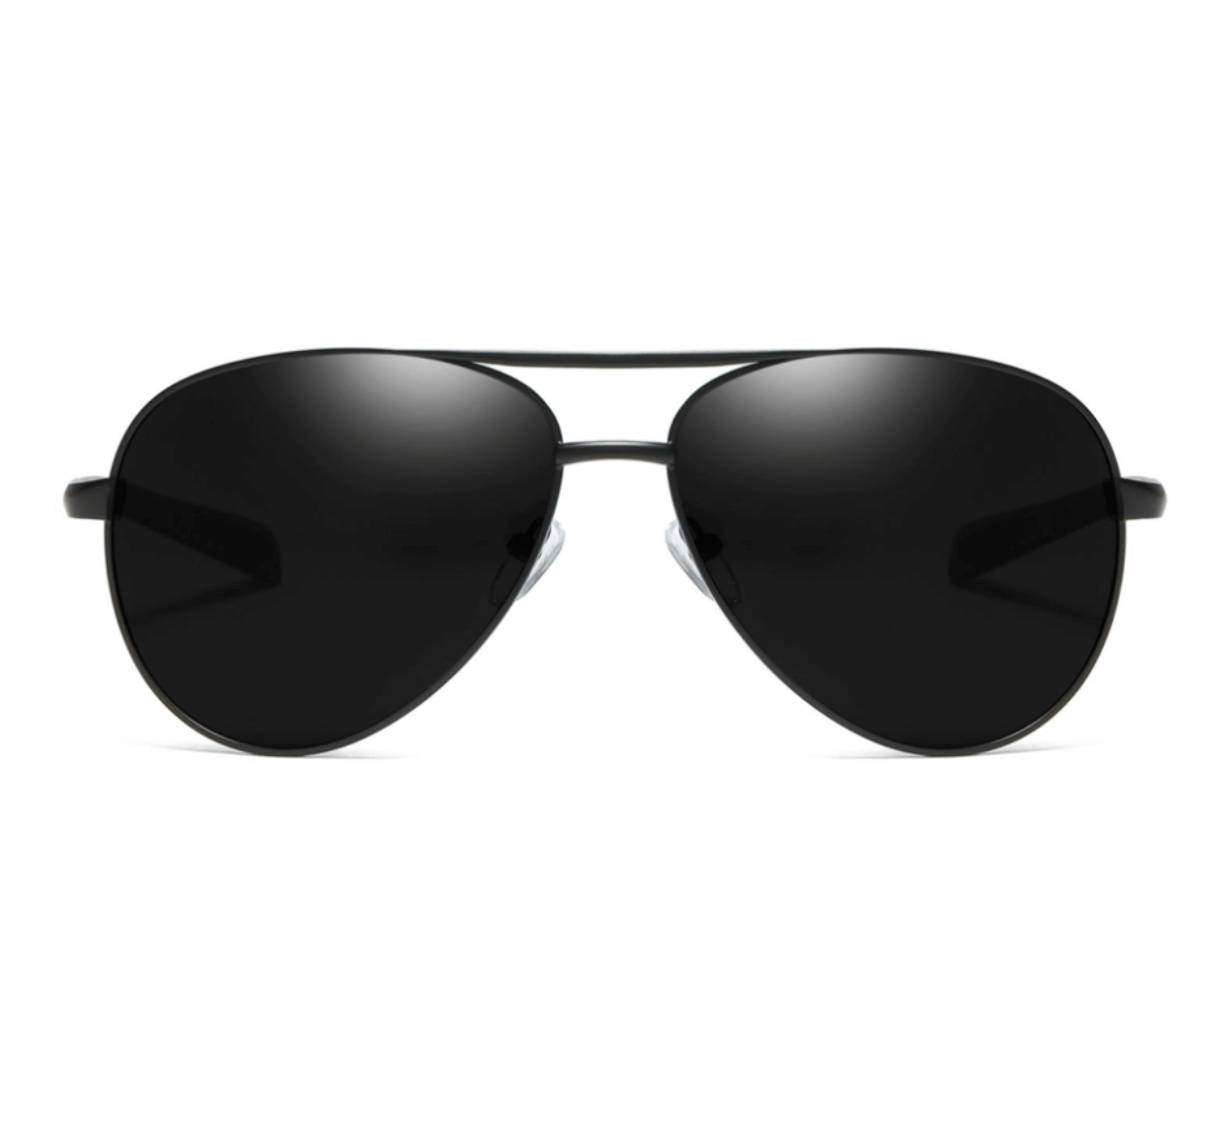 Custom sunglasses frames, custom made sunglass frames, custom sunglass frame maker, sunglass frame manufacturer China